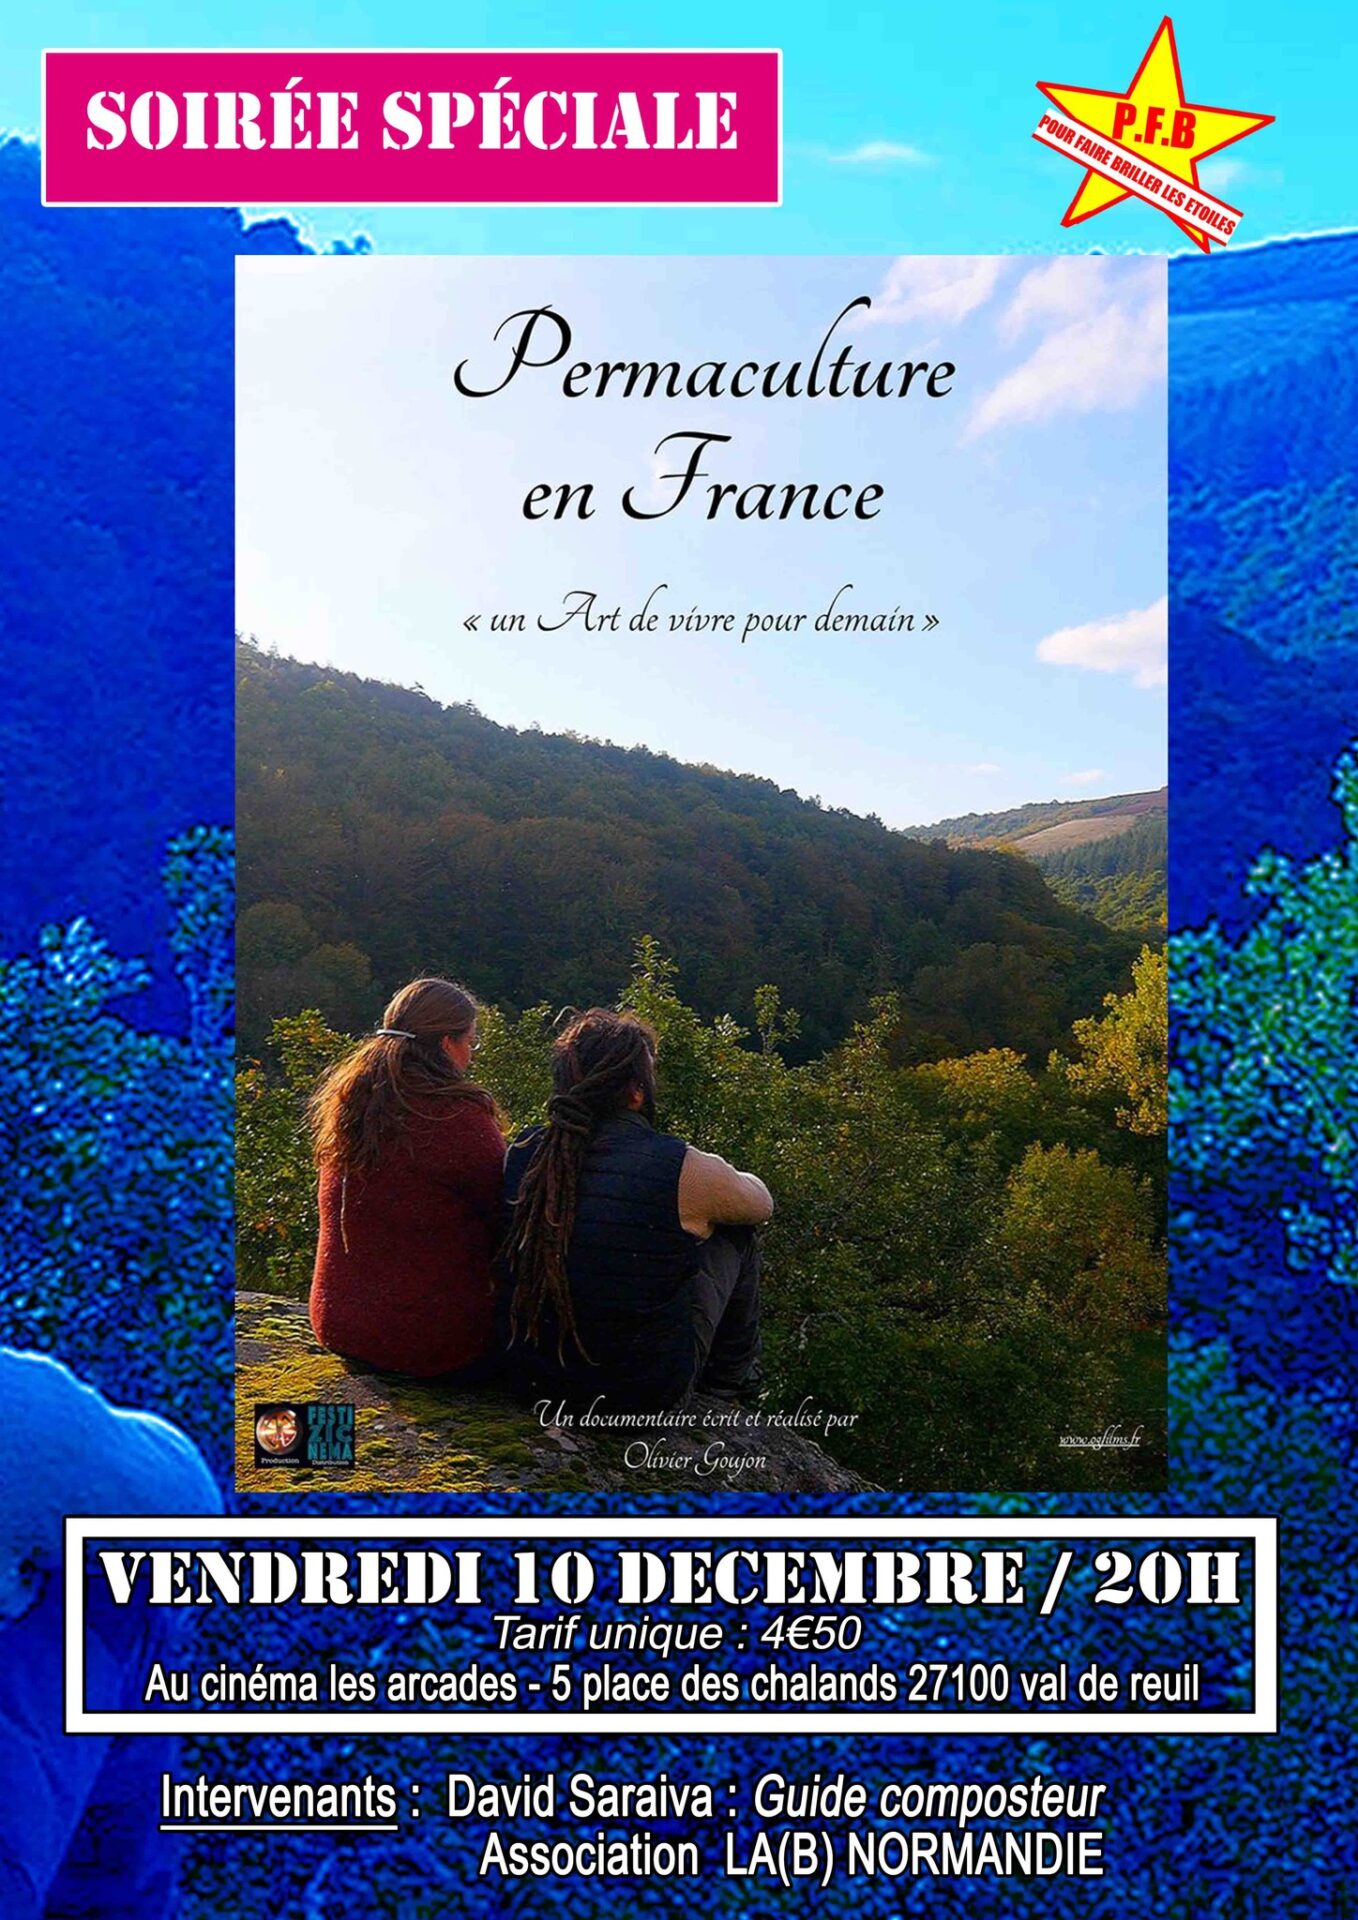 Cinéma Les Arcades : Soirée spéciale autour du film « Permaculture en France, un art de vivre pour demain », d’Olivier Goujon